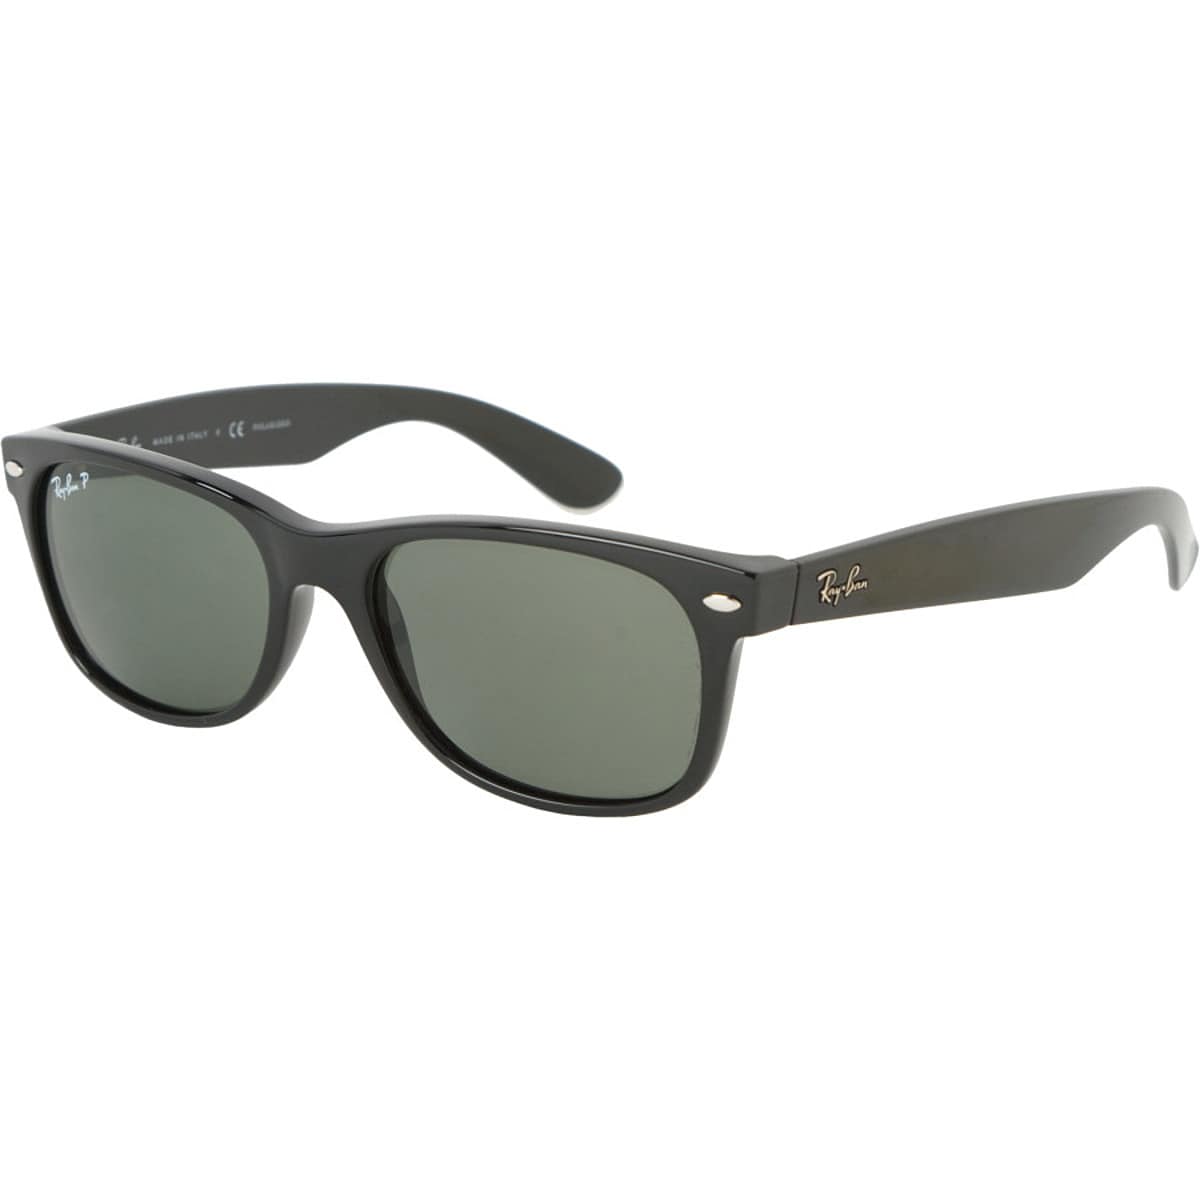 цена Новые поляризованные солнцезащитные очки wayfarer Ray-Ban, цвет black/crystal natural green